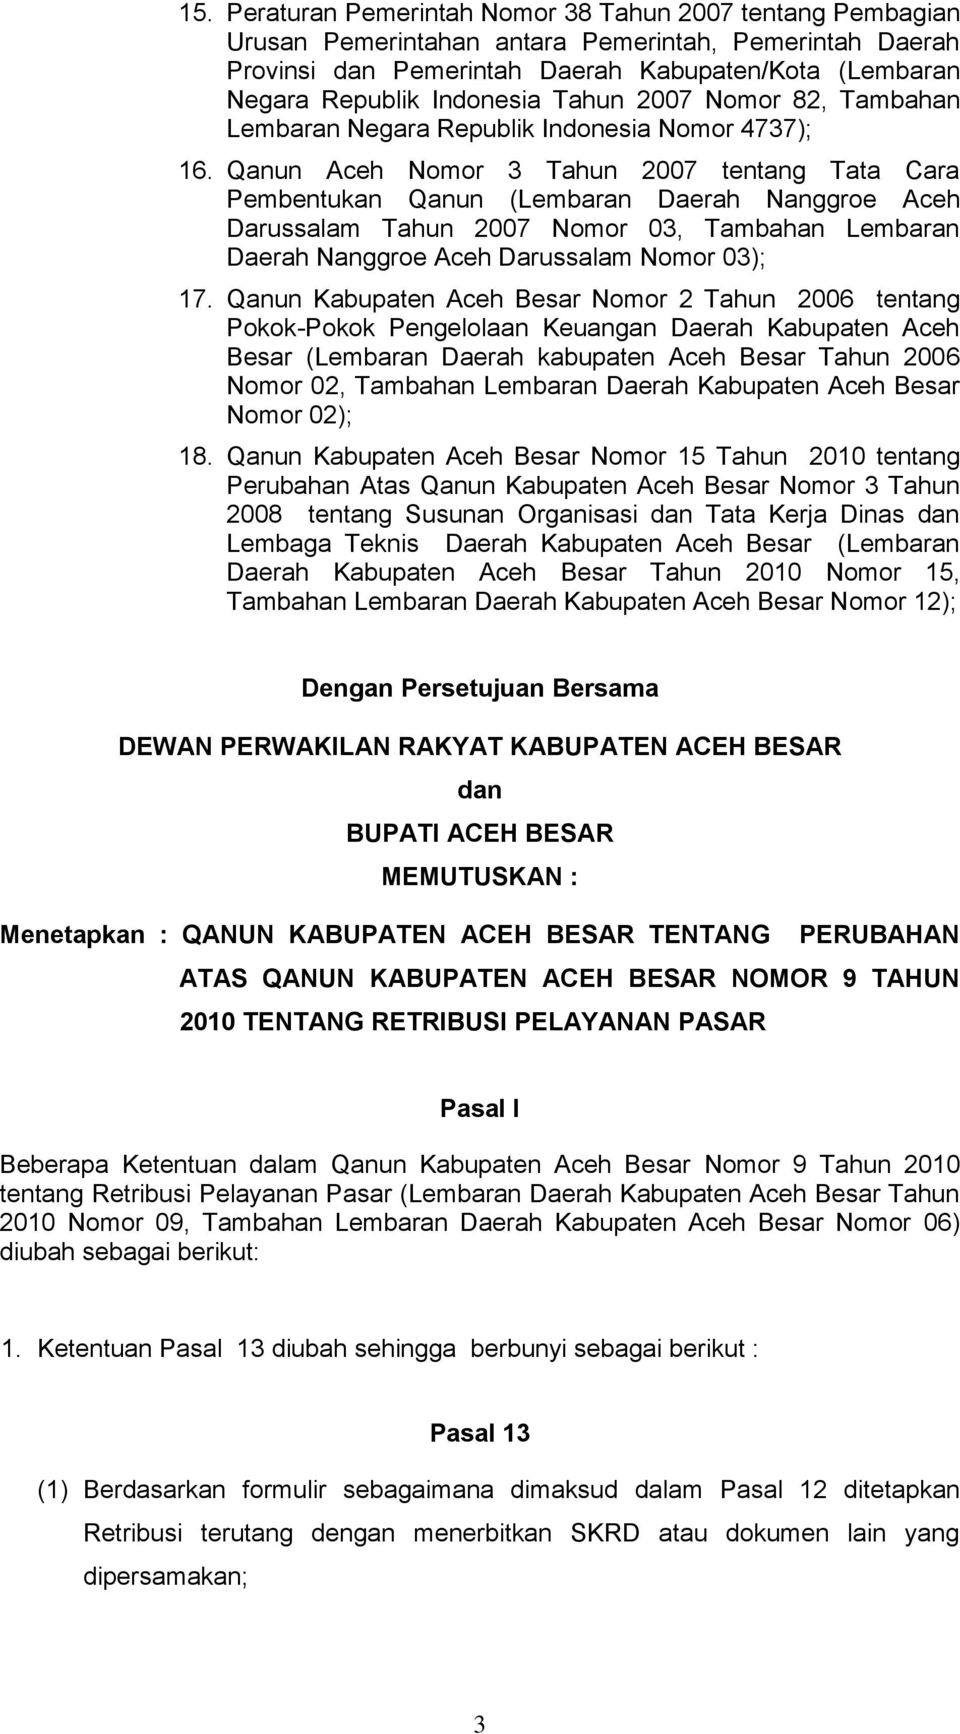 Qanun Aceh Nomor 3 Tahun 2007 tentang Tata Cara Pembentukan Qanun (Lembaran Daerah Nanggroe Aceh Darussalam Tahun 2007 Nomor 03, Tambahan Lembaran Daerah Nanggroe Aceh Darussalam Nomor 03); 17.